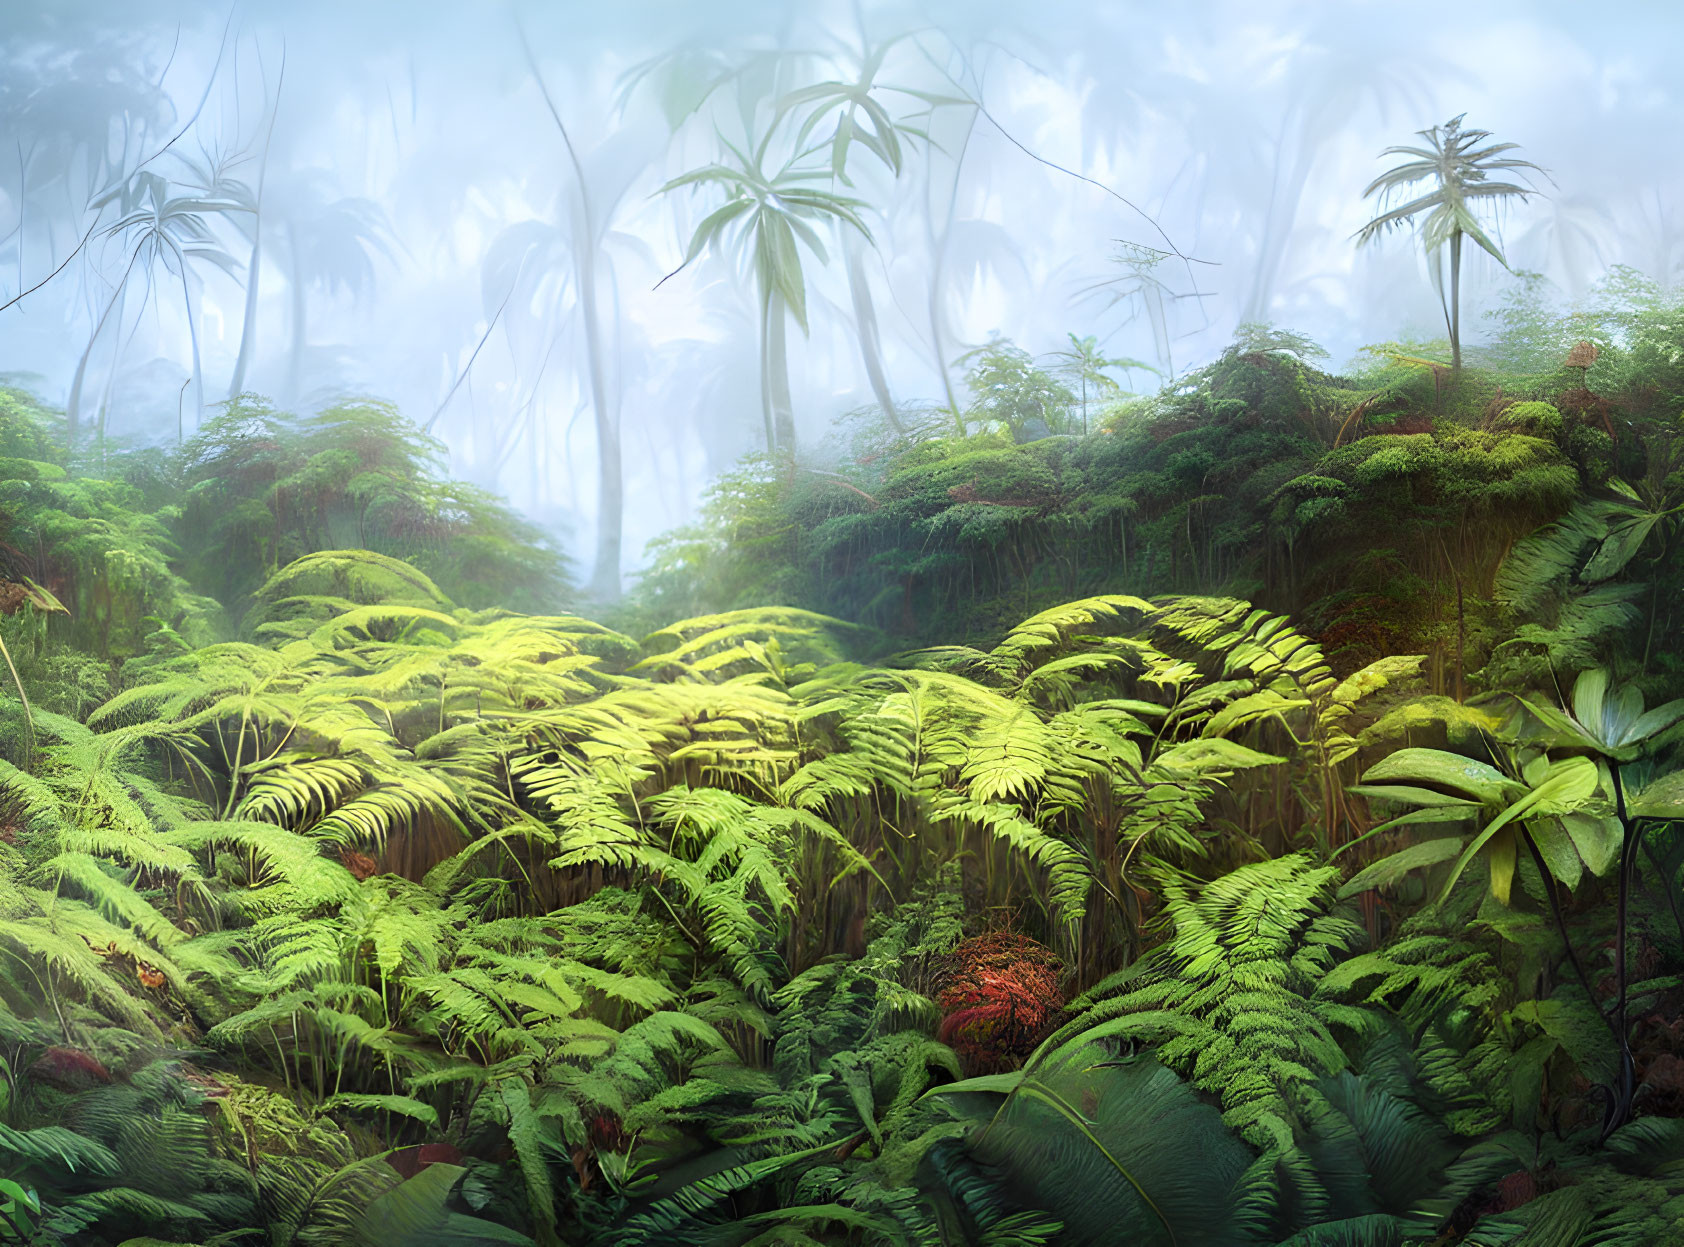 Serene rainforest with dense ferns and fog-enveloped trees